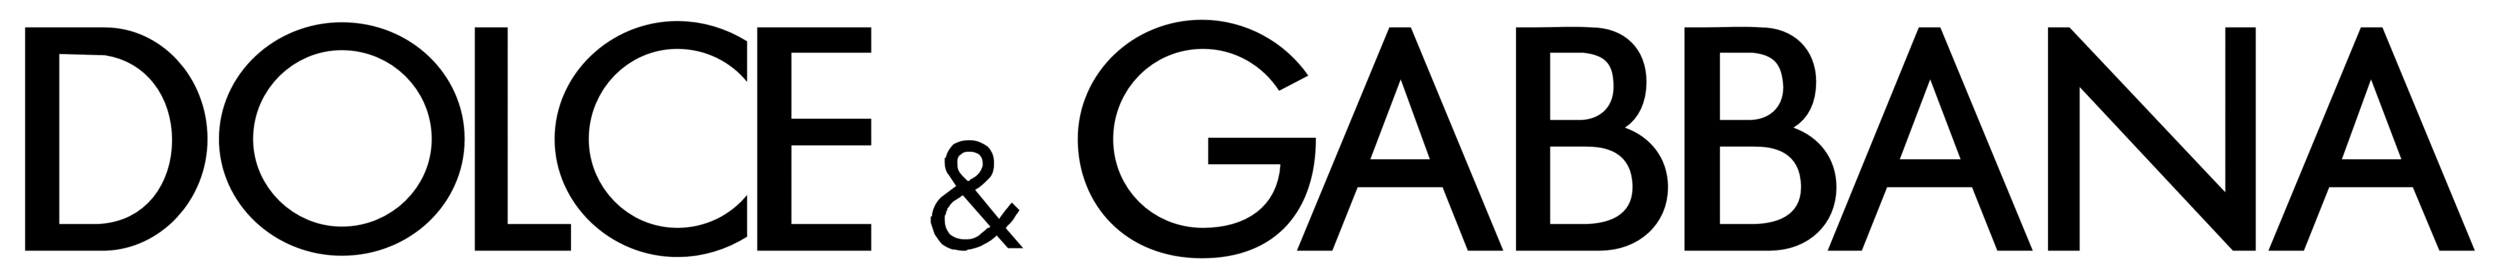 Dolce__Gabbana_logo_white_5000x555.png